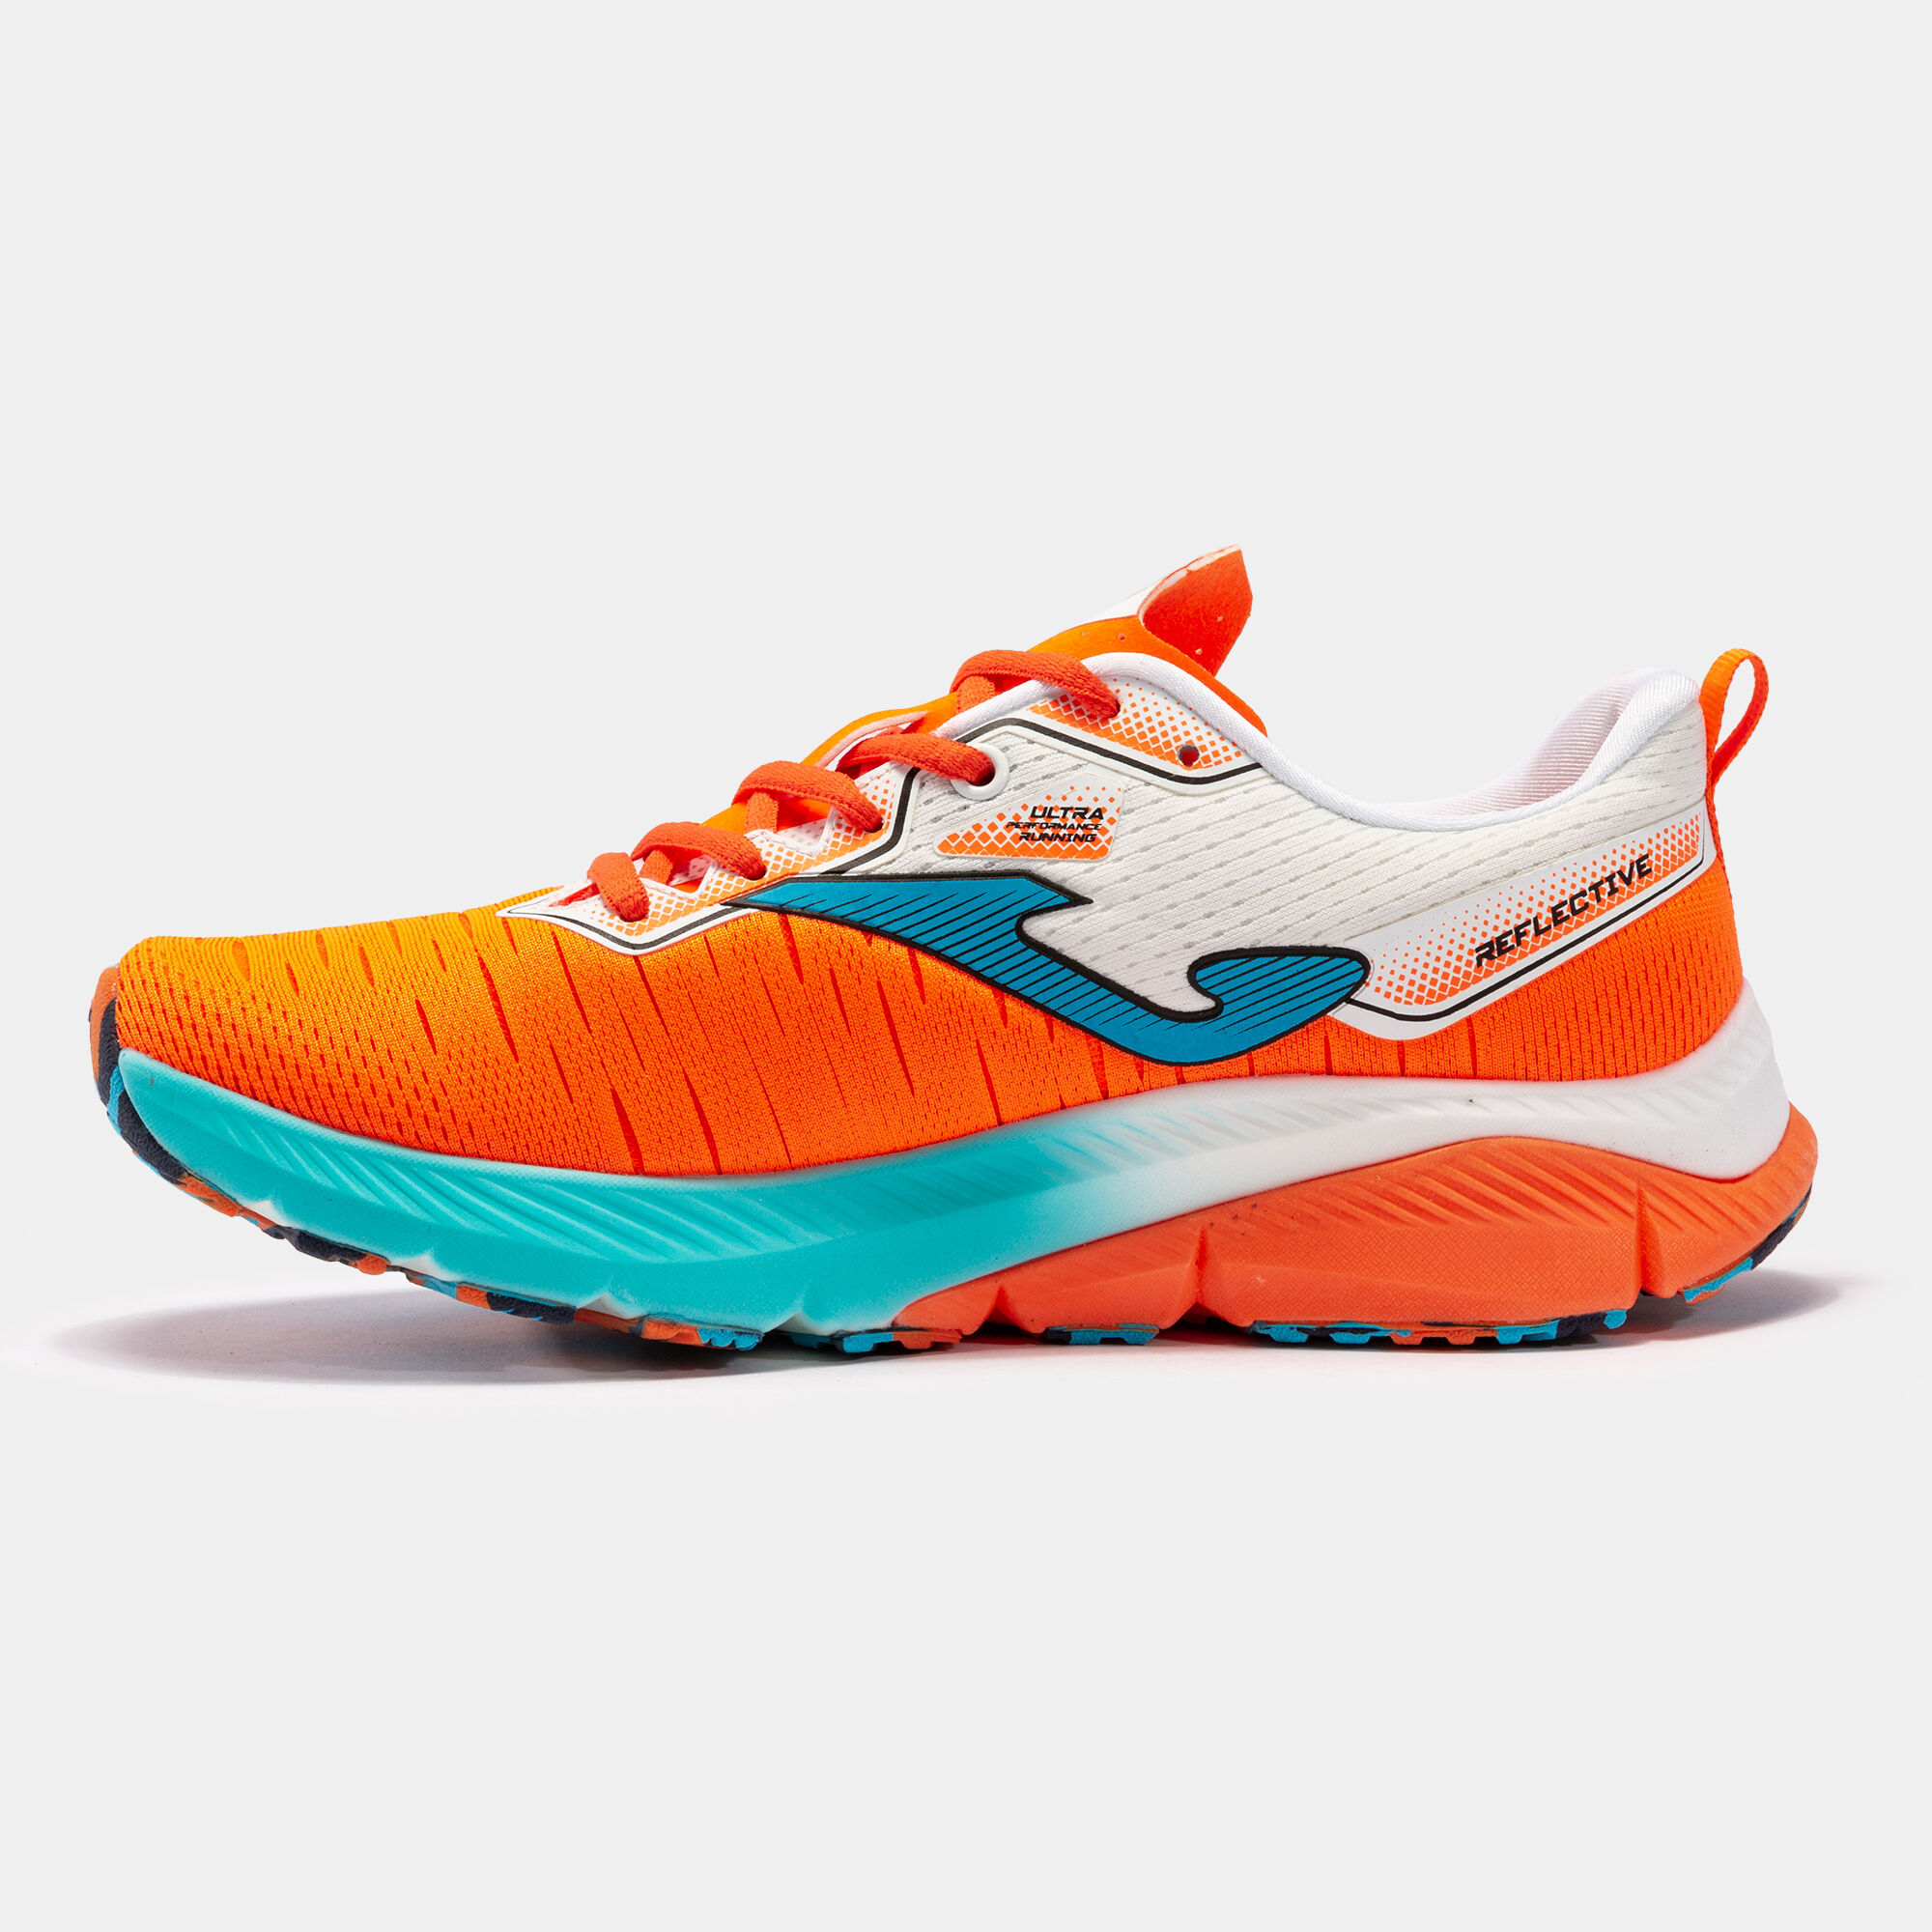 Chaussures running Fenix 22 homme orange fluo bleu ciel